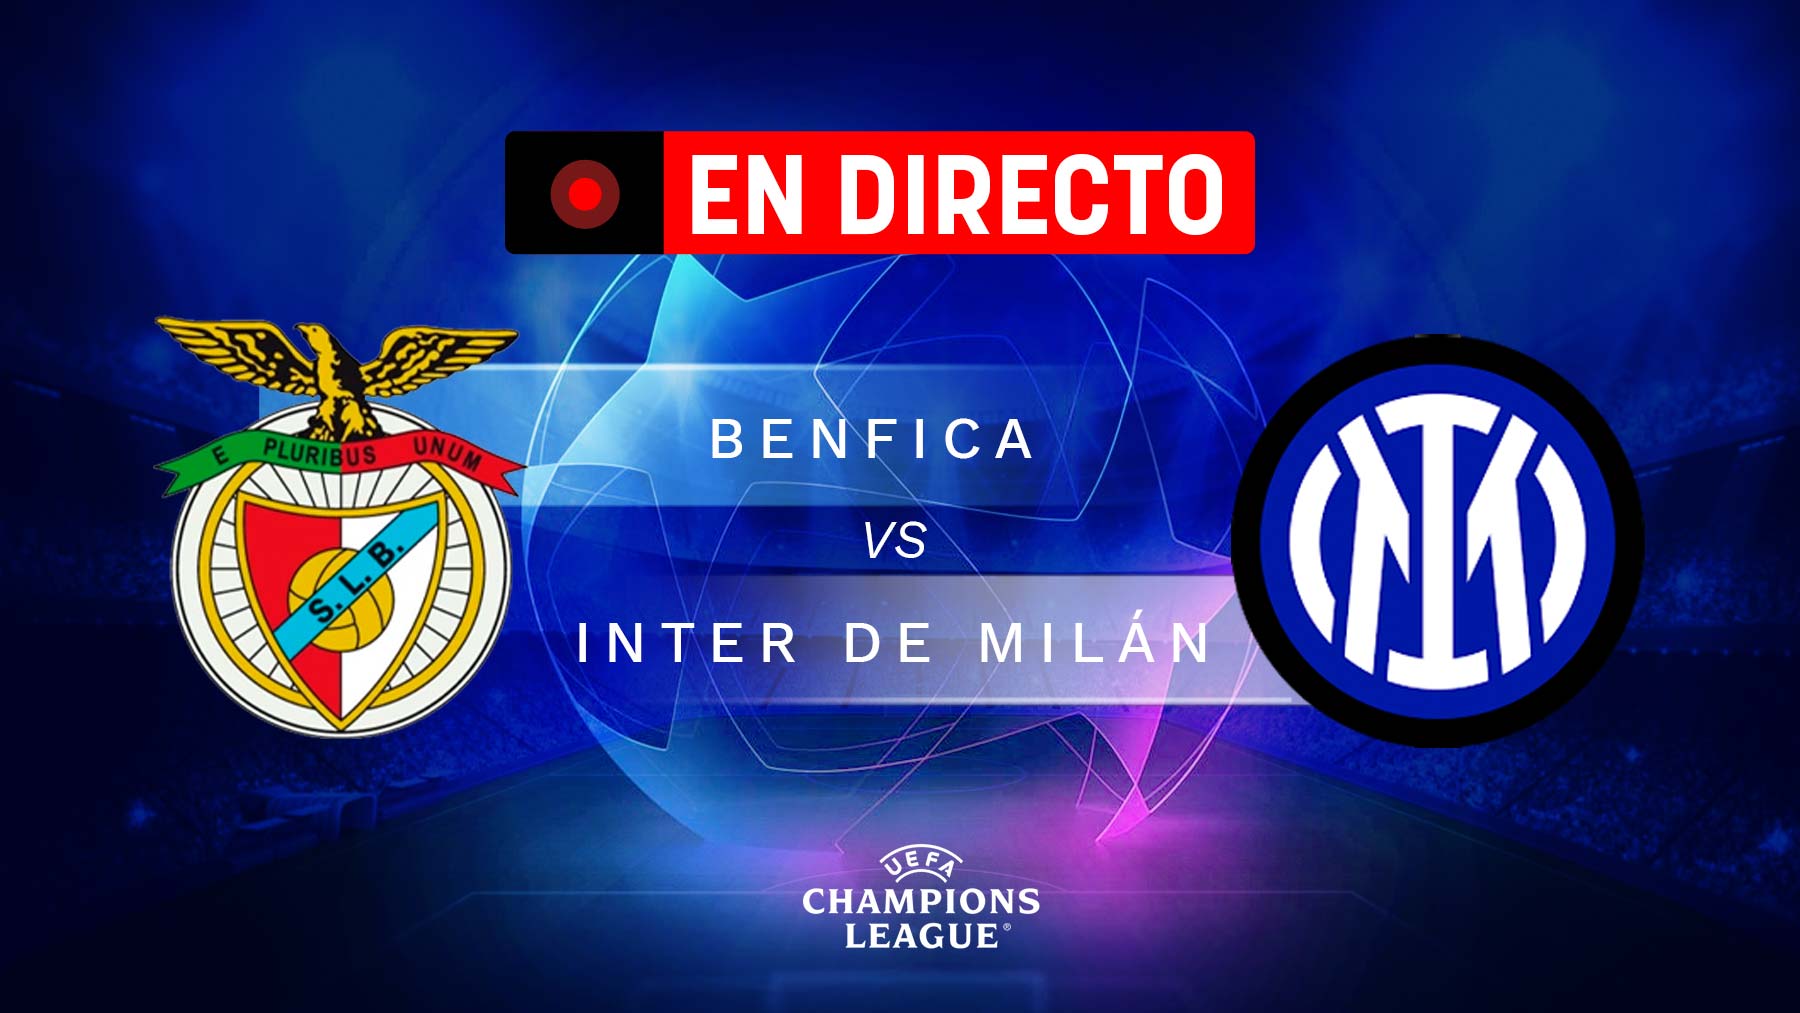 Benfica – Inter de Milán, en directo: resultado, goles y minuto a minuto del partido de Champions League hoy.